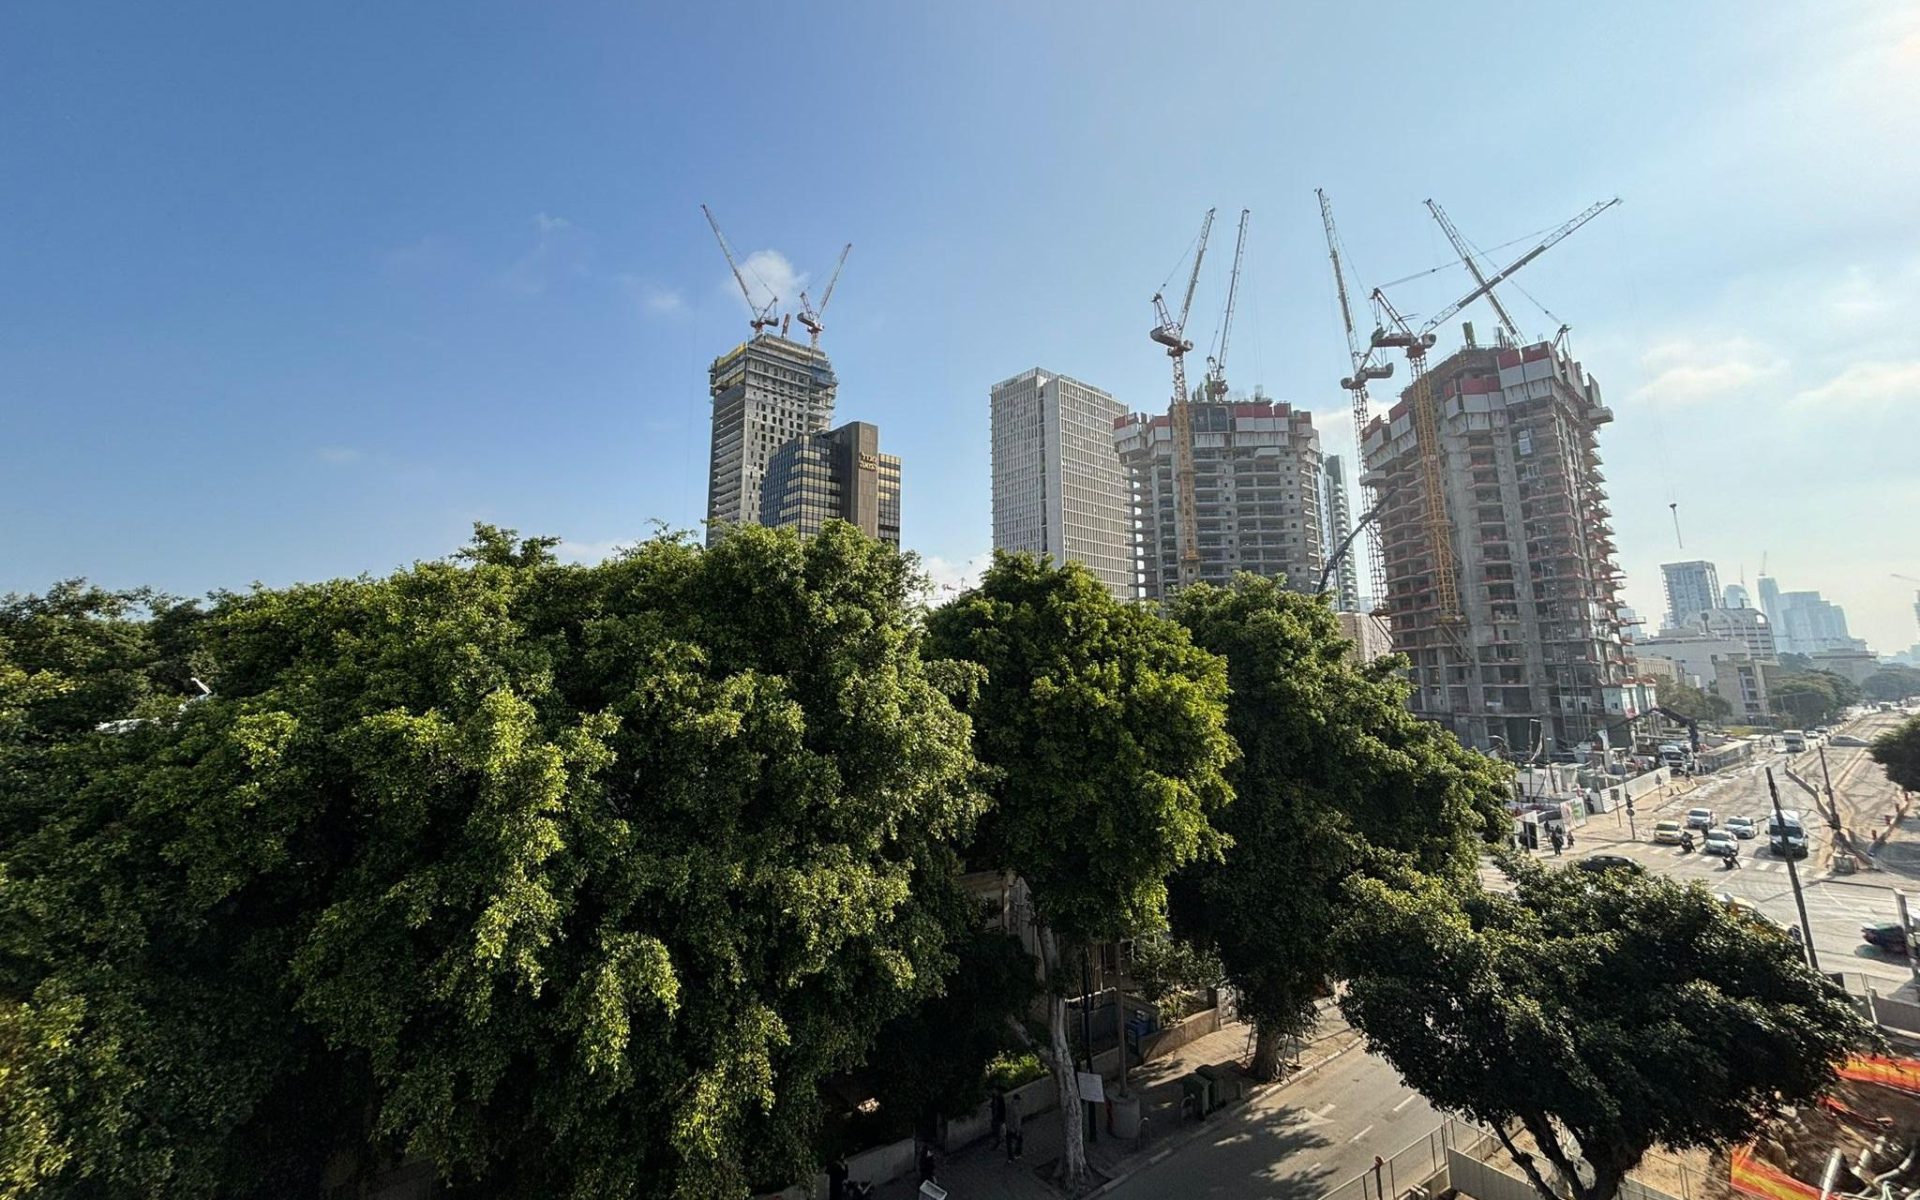 כמעט 68 אלף דירות עדיין לא נמכרו. בניינים בבנייה בתל אביב (צילום: אלכסנדר כץ)